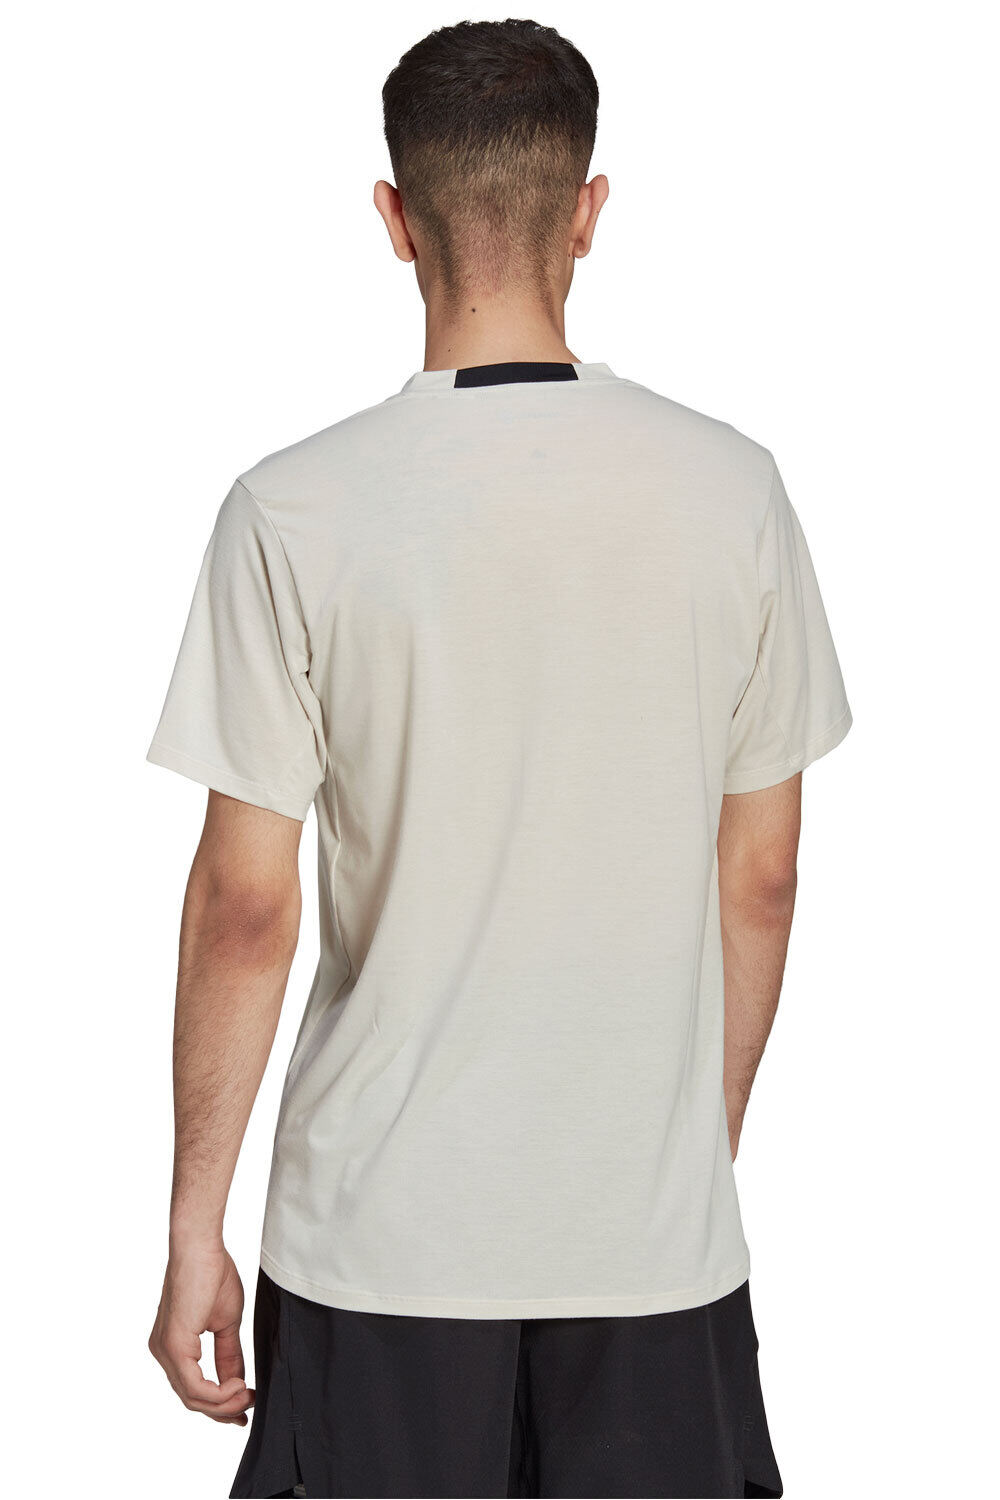 adidas camiseta fitness hombre Designed for Training vista frontal